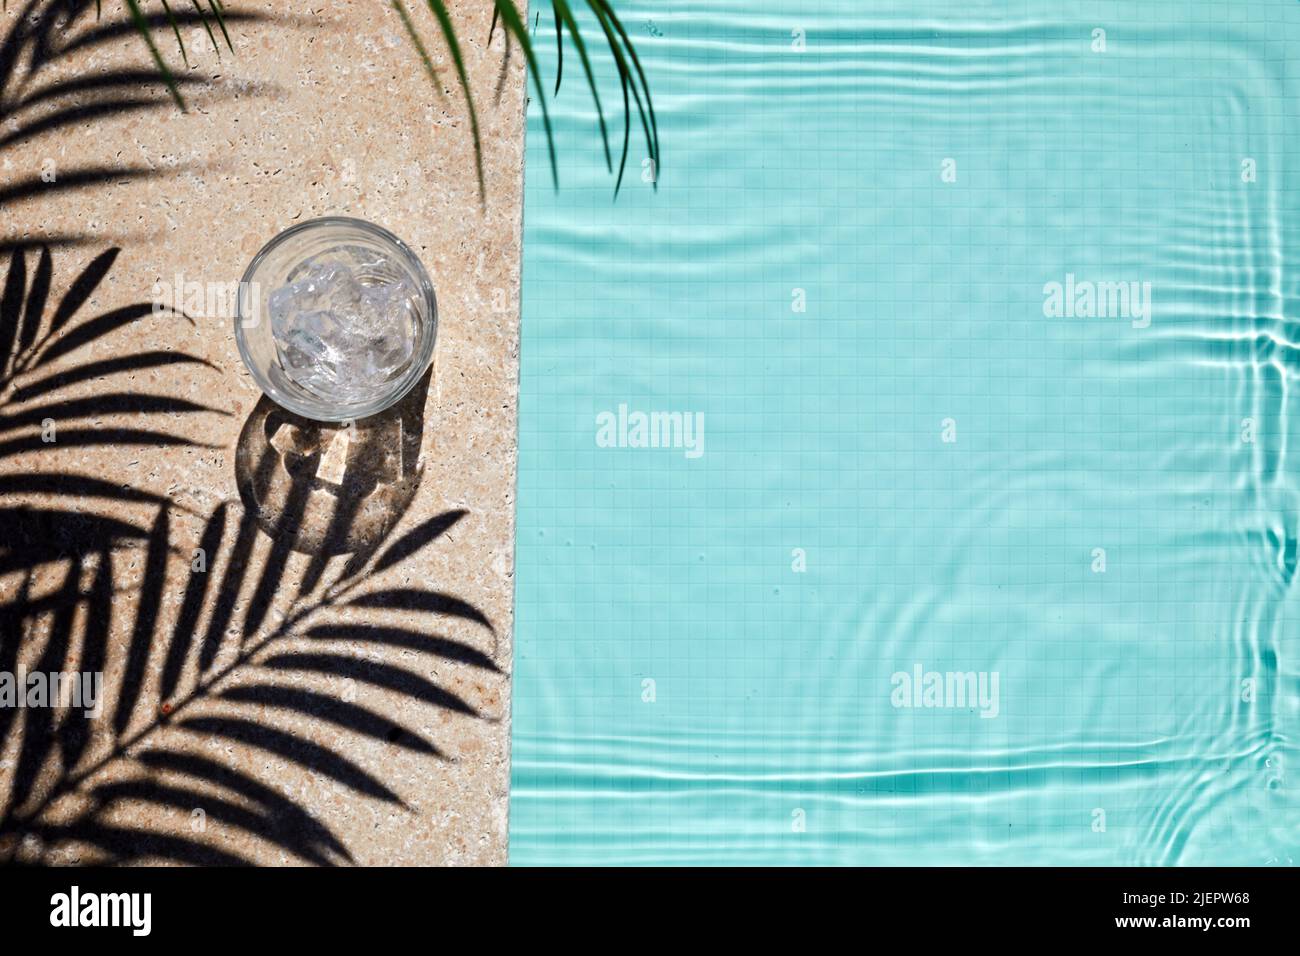 Vue sur la piscine avec verre d'eau et ombre aux palmiers. Concept de vacances d'été Banque D'Images